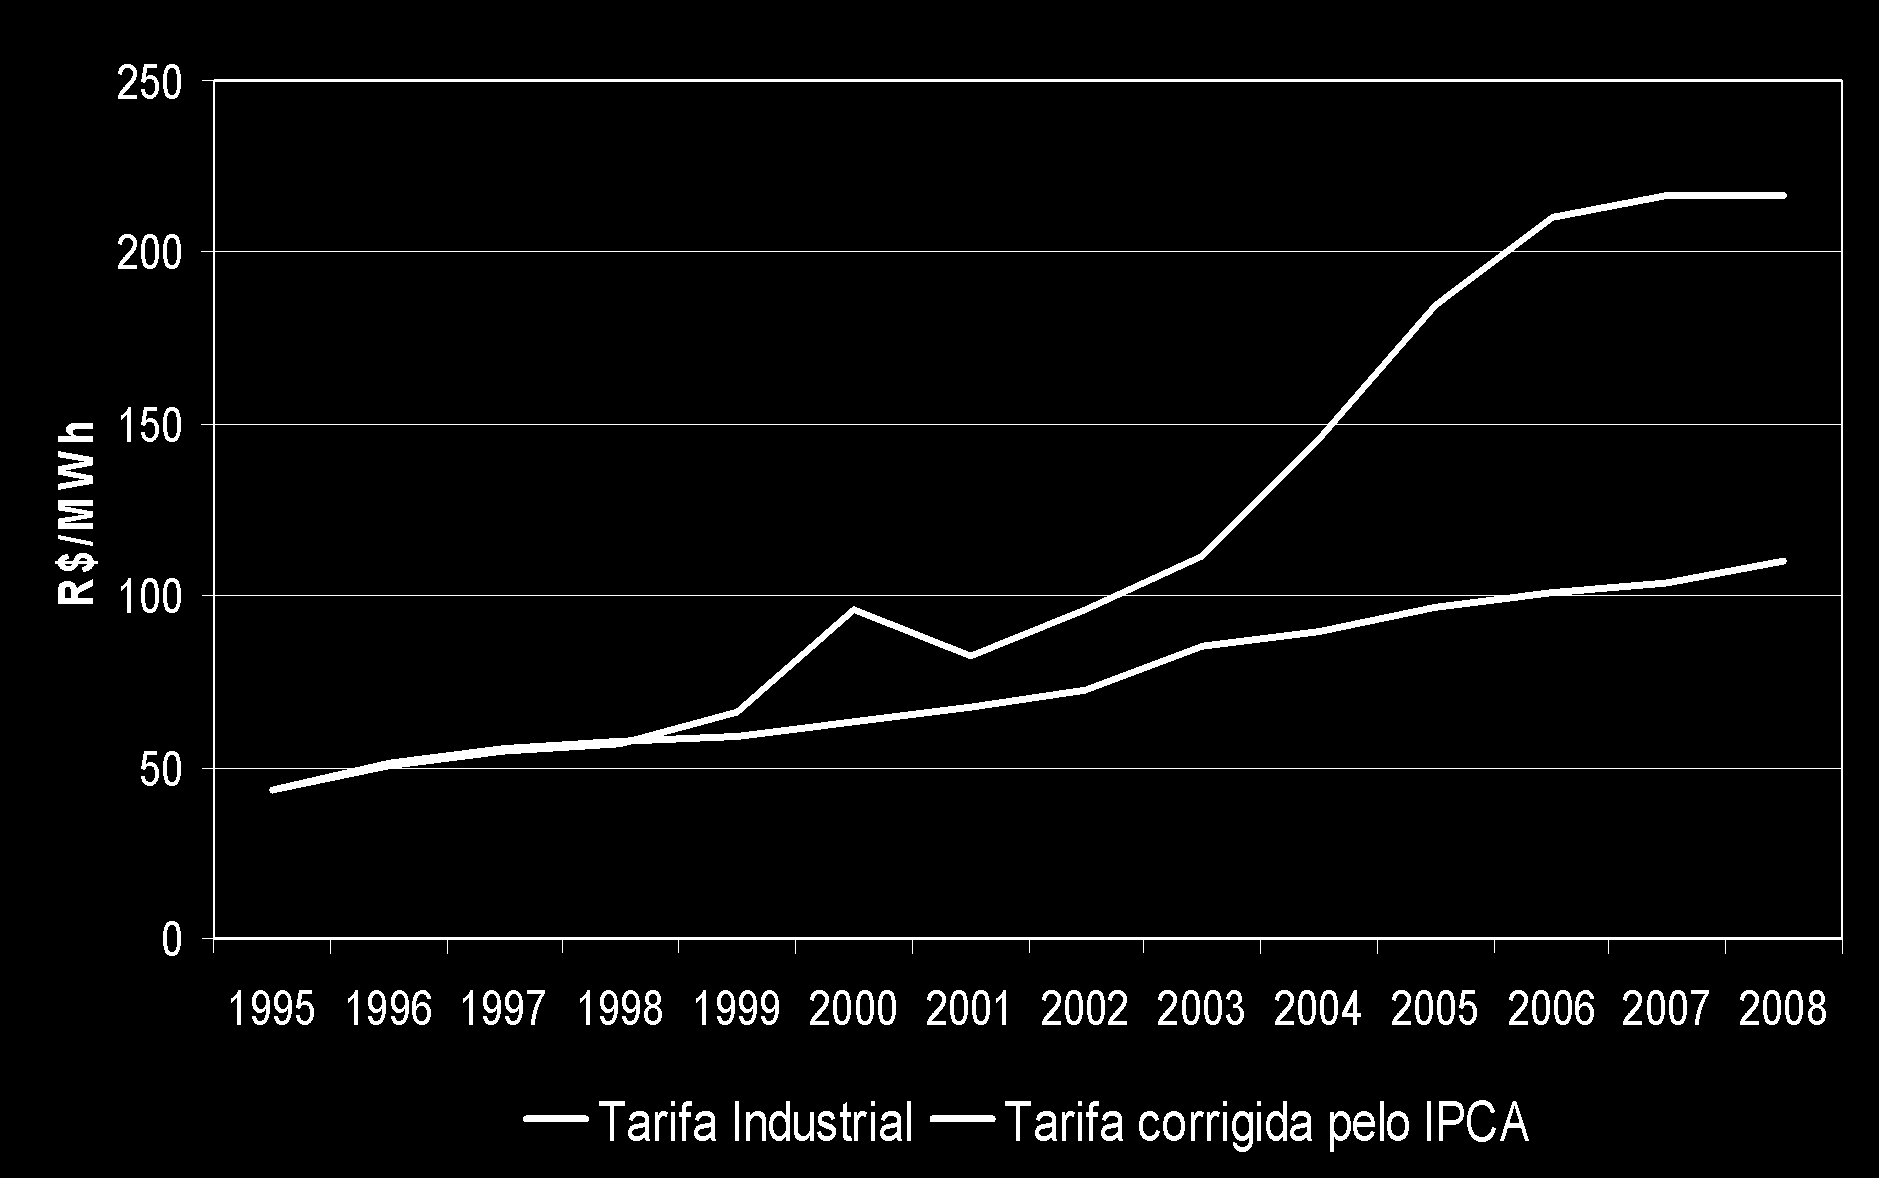 R$/MWh Tarifa Industrial e corrigida pela inflação Exclusive impostos.